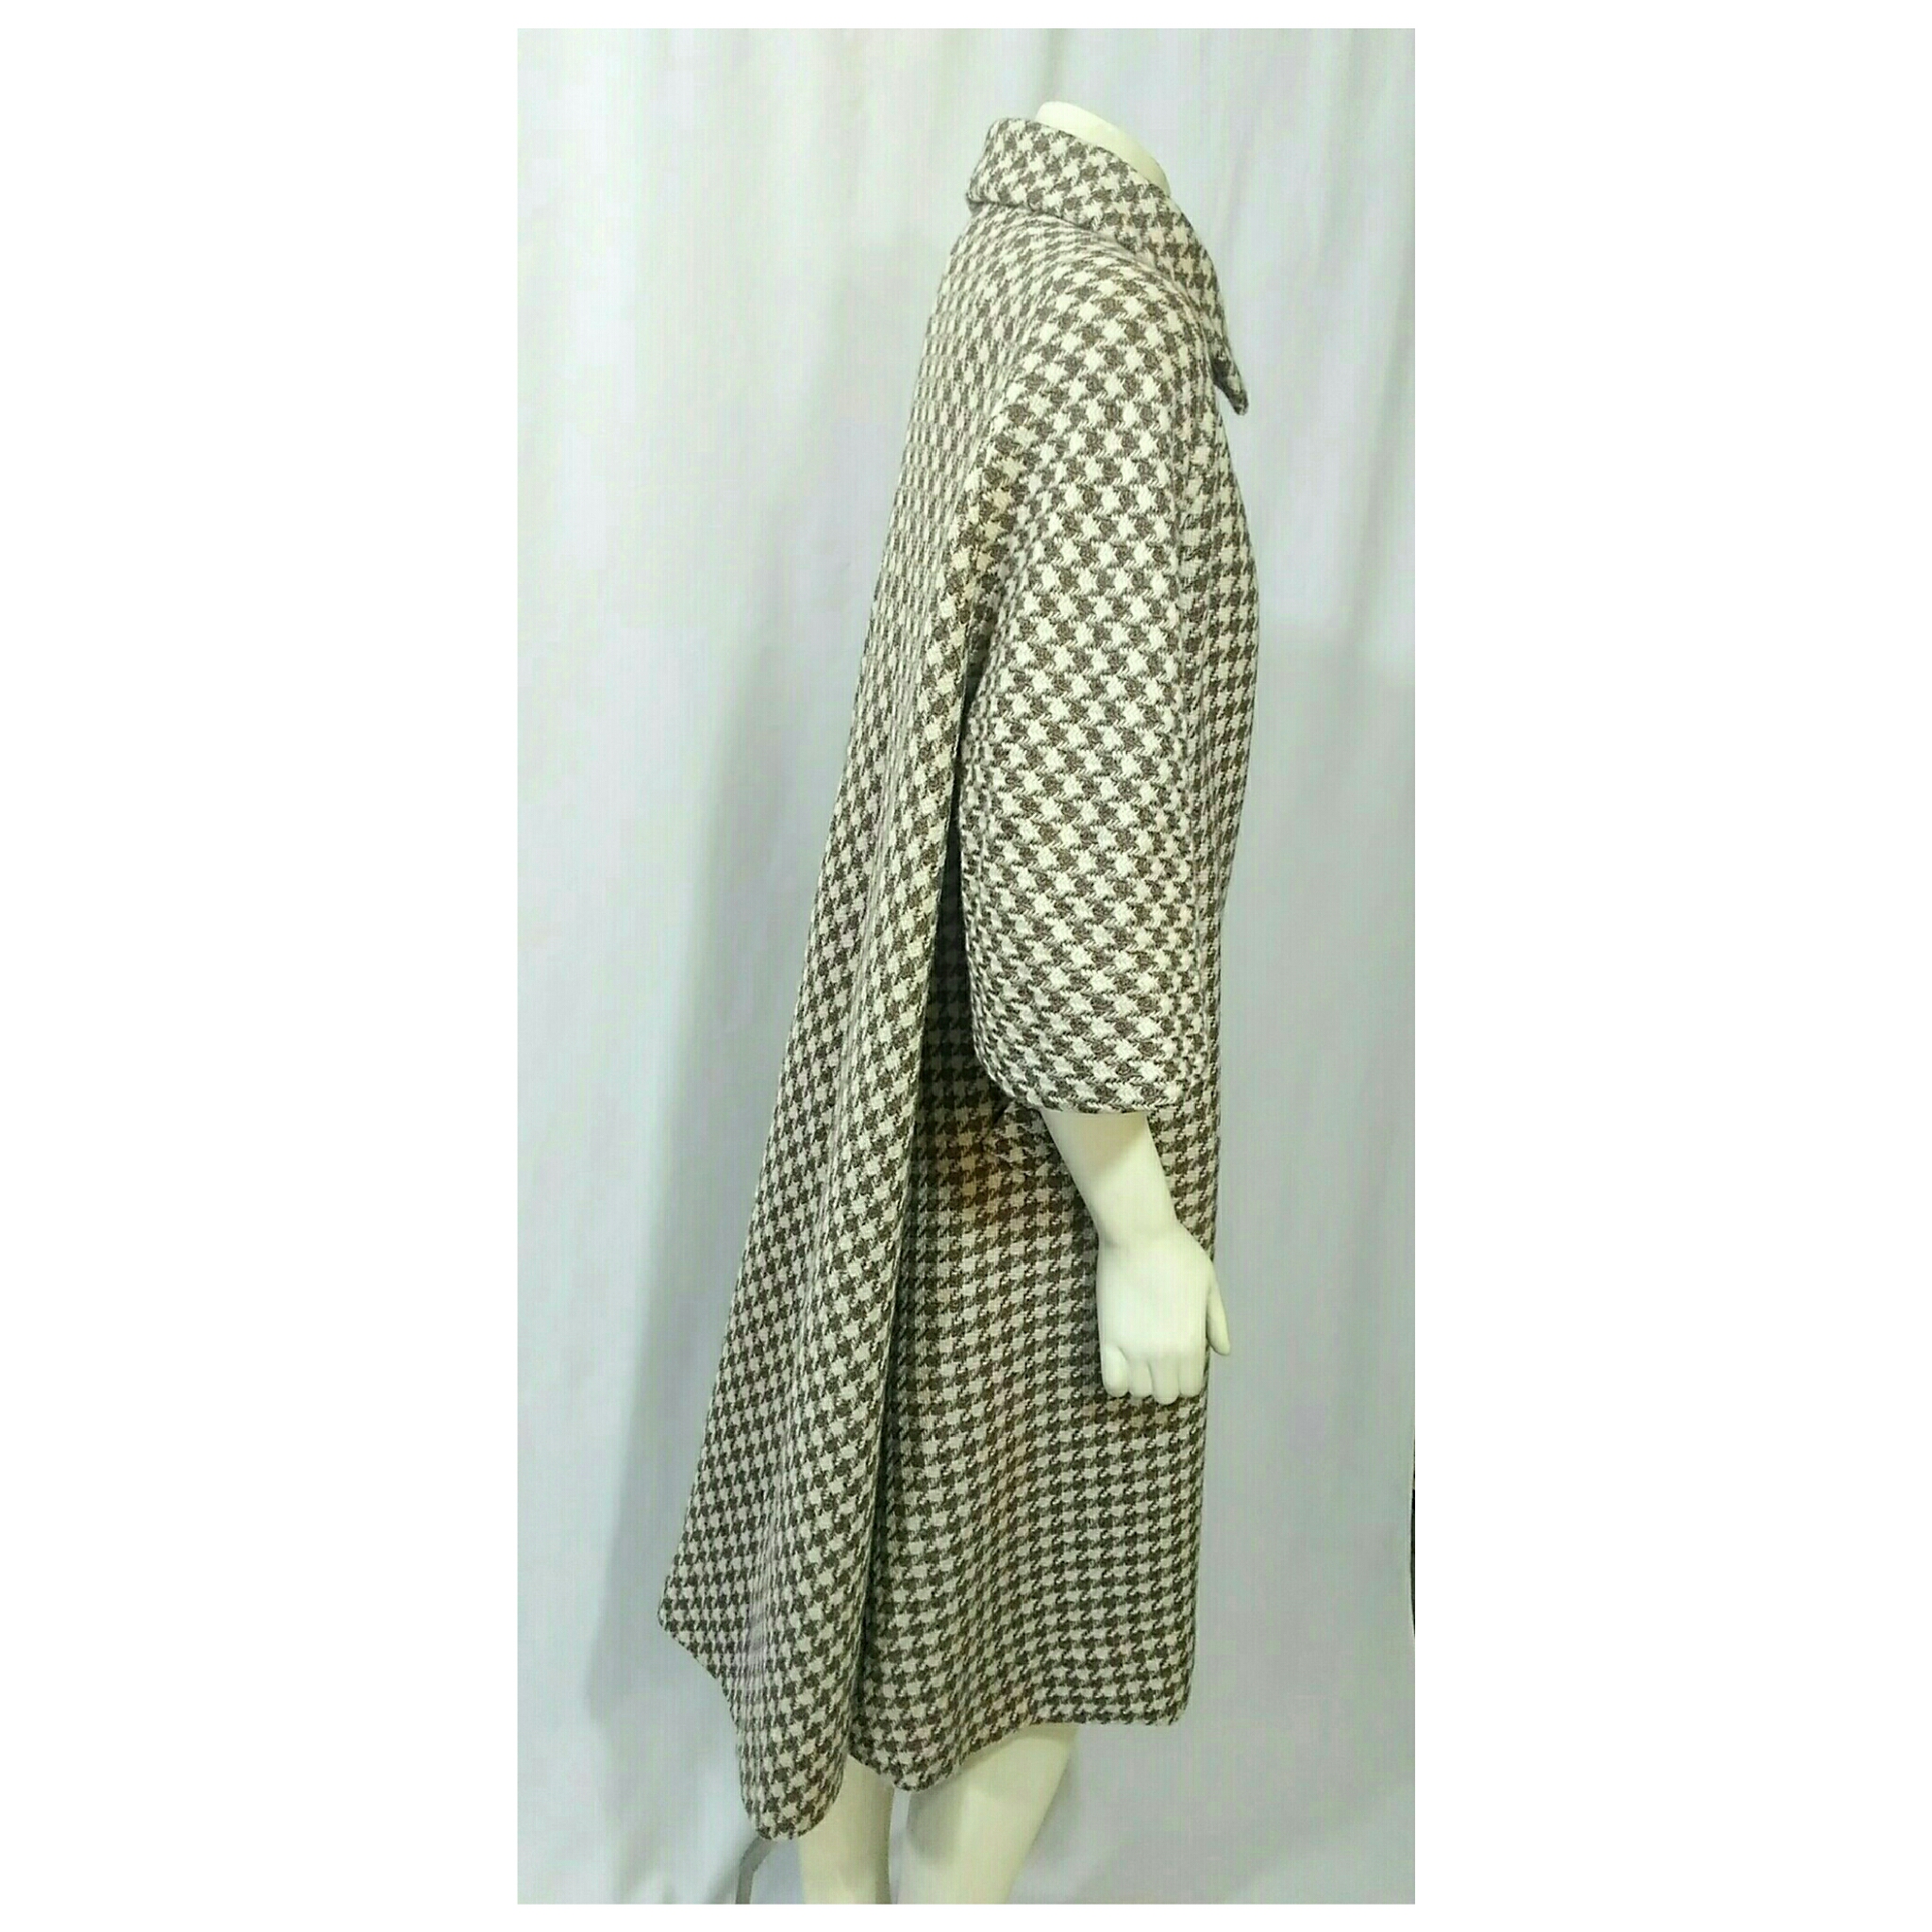 Vintage 1950's Swing Coat Wool Tweed, Tan and Beige Checkered; 1950's Wool Swing Coat